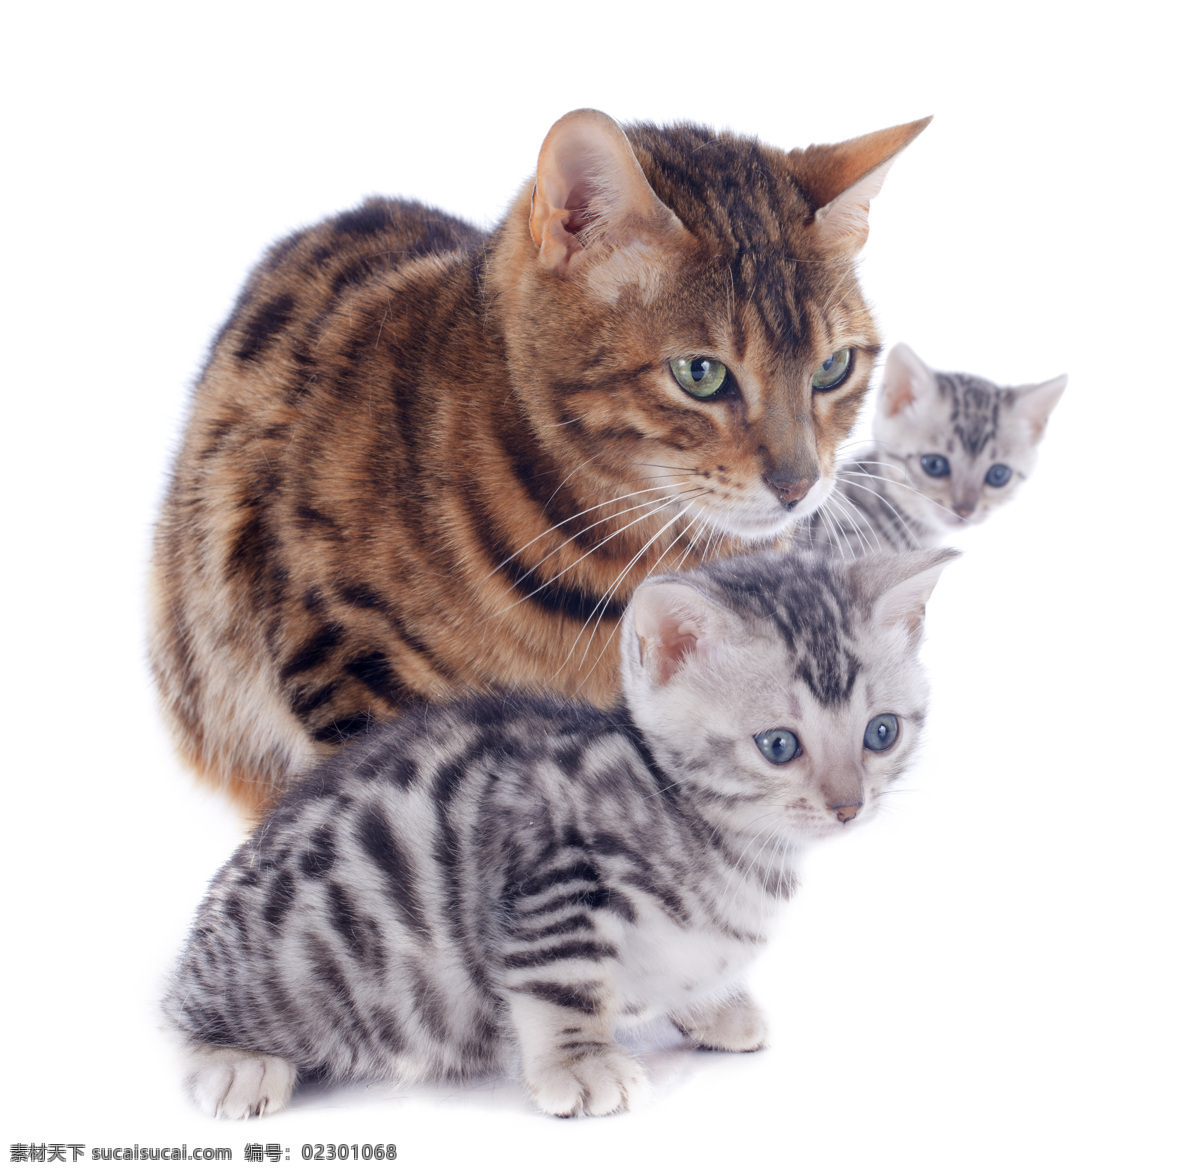 三只小猫 小猫 猫咪 萌猫 花猫 三只 宠物 萌宠 家宠 动物 可爱 猫猫 喵喵 家禽家畜 生物世界